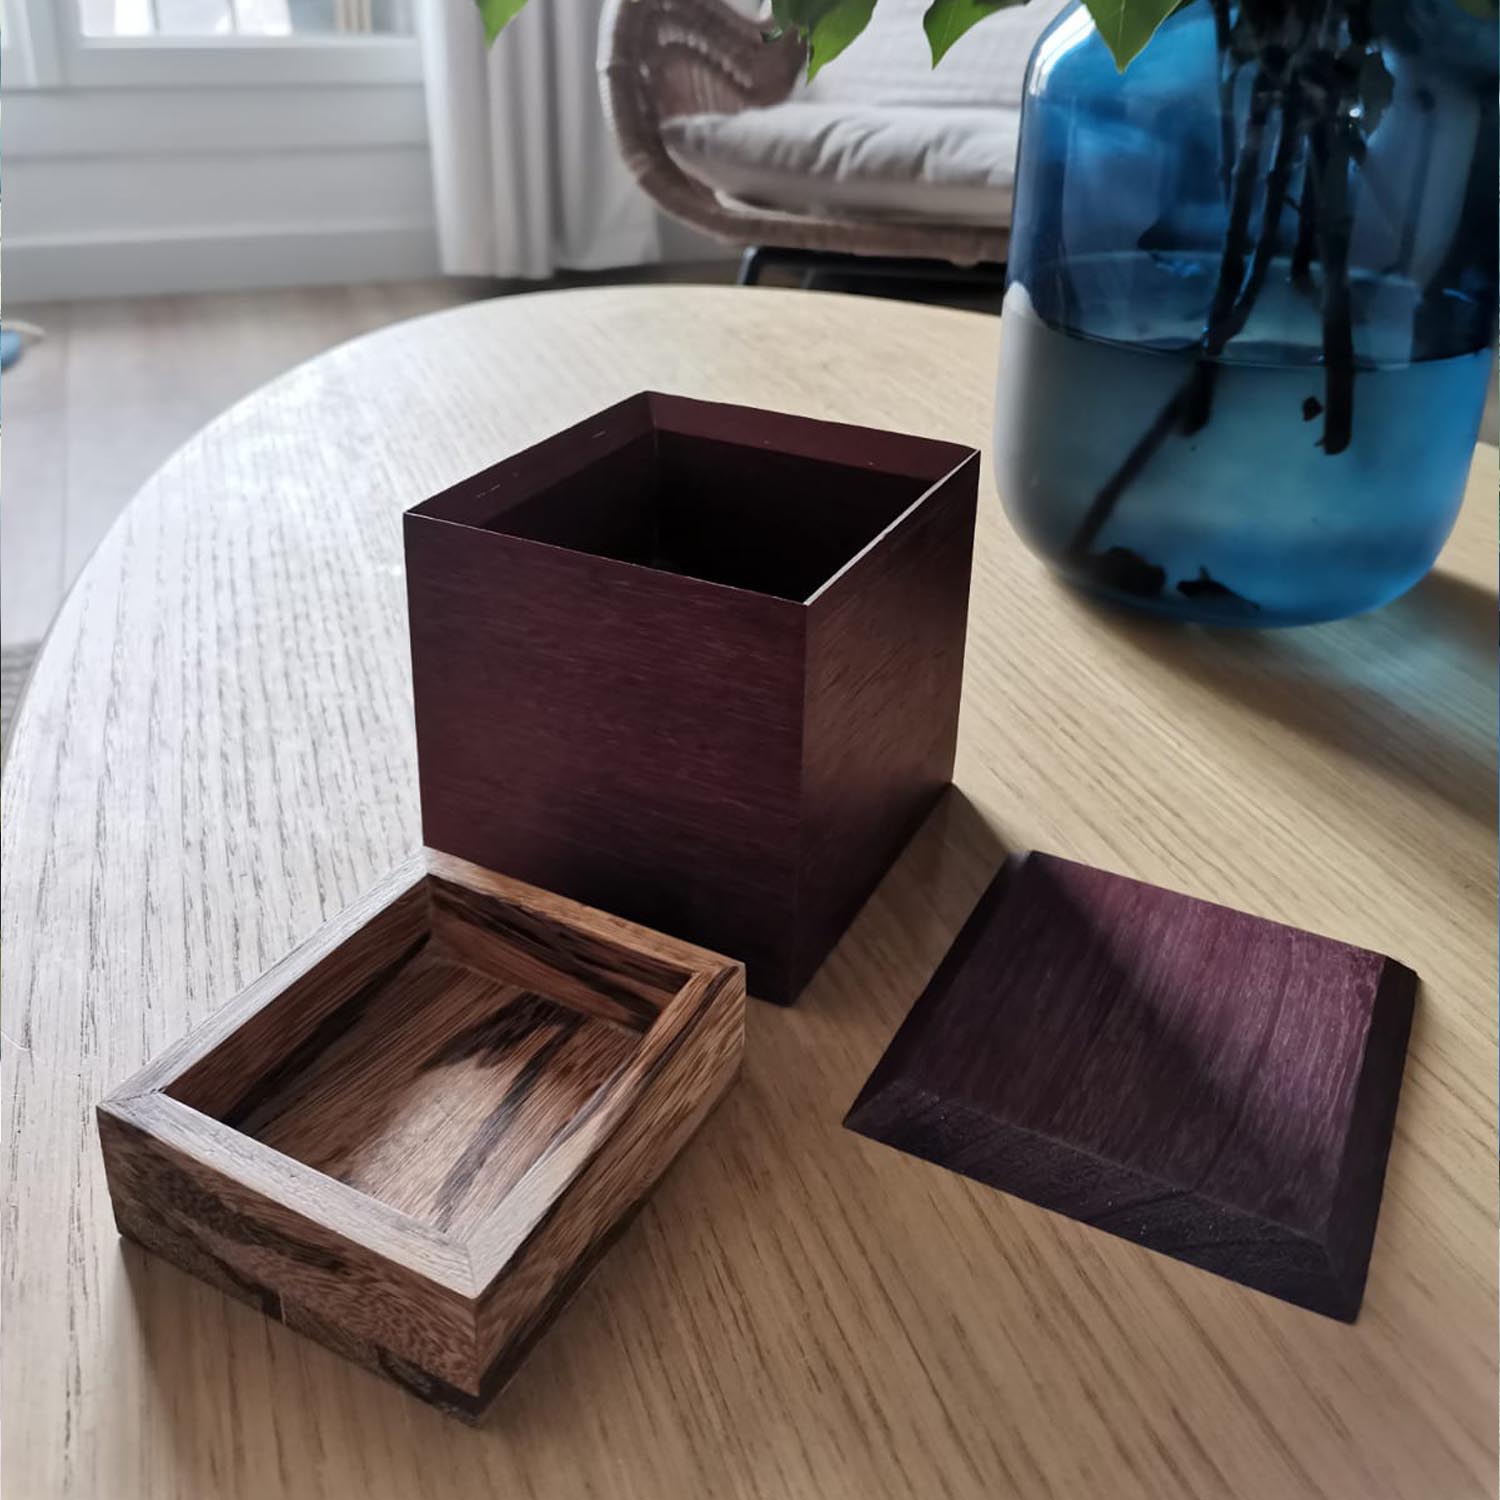 Boîte en bois design contemporaine et sur mesure, ébéniste, ébénisterie, woodwork